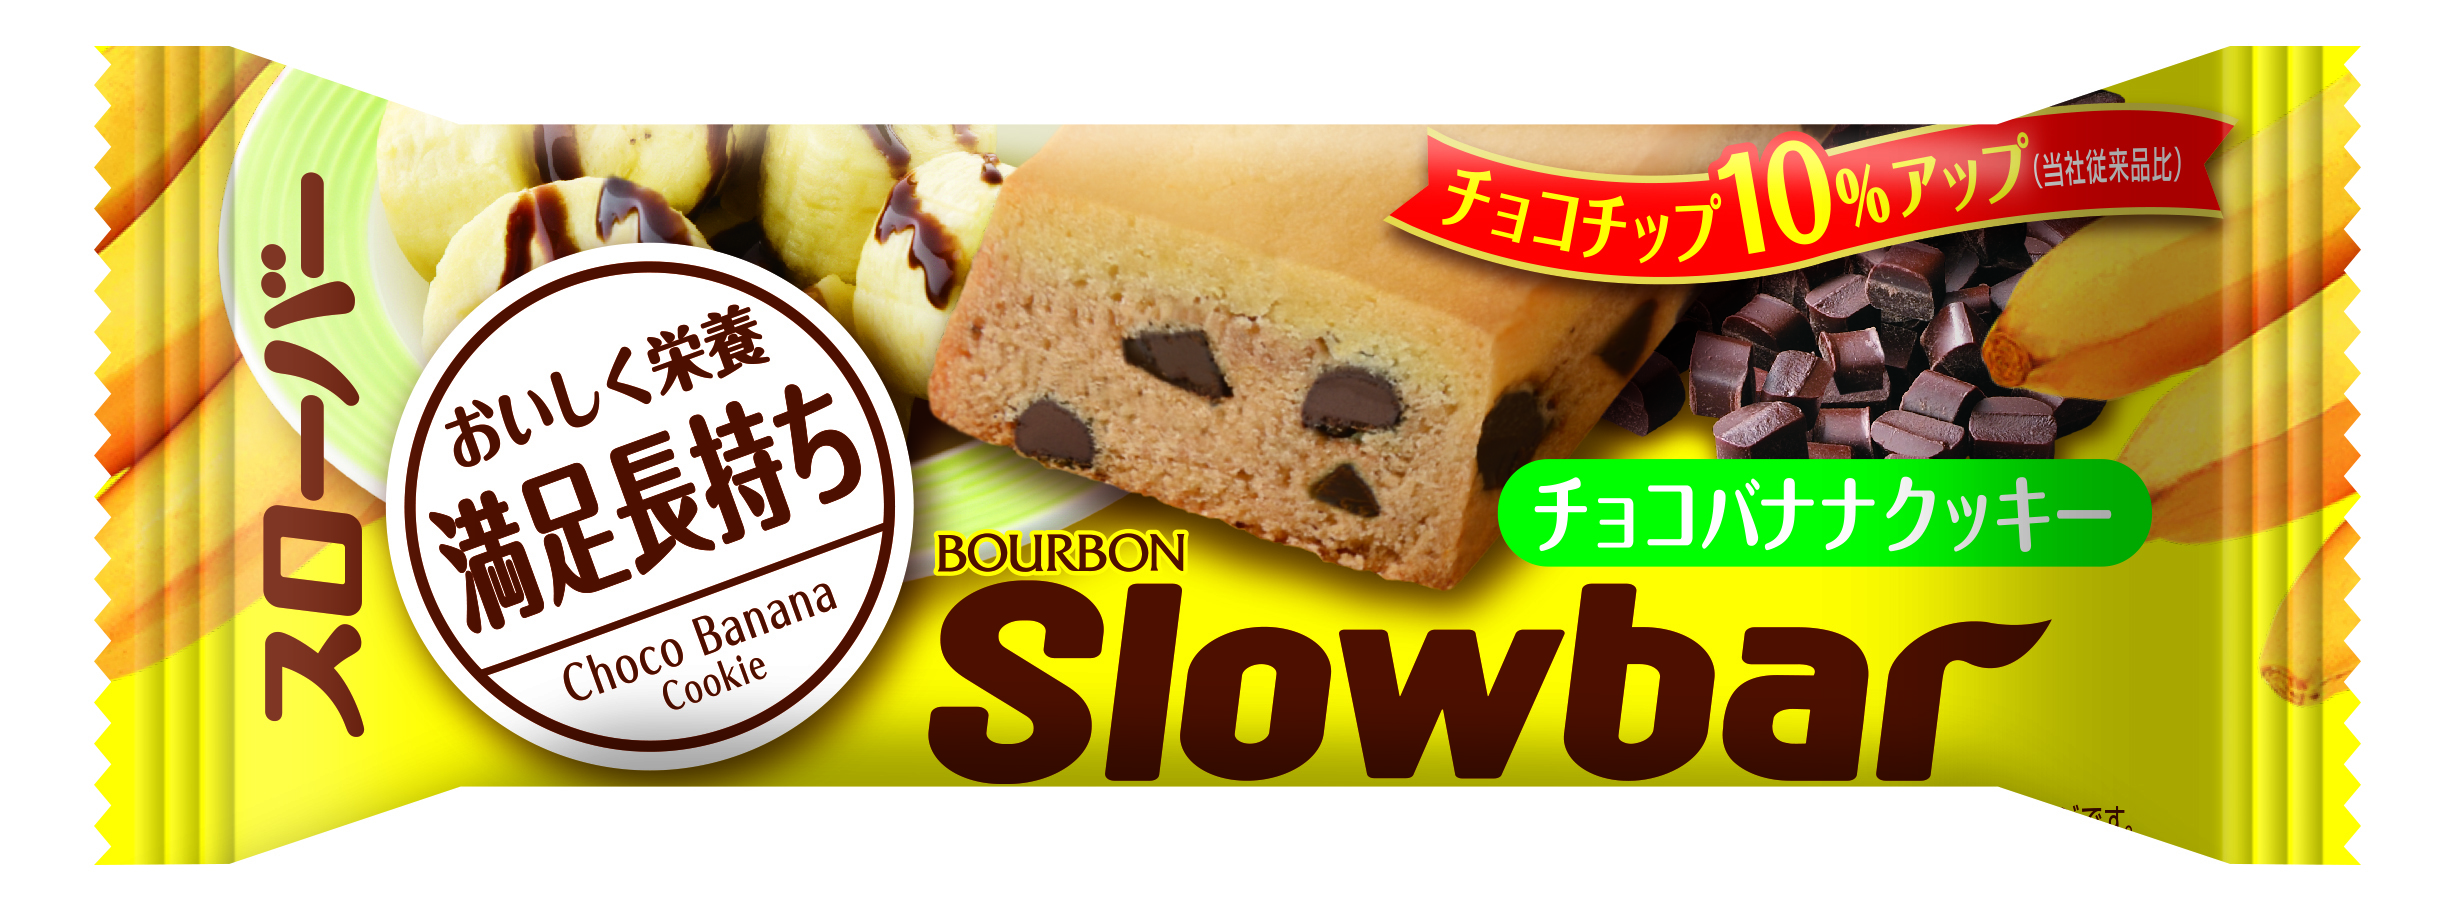 ブルボン バータイプの行動食 スローバー に チョコナッツクッキー を3月7日 火 新発売 手軽においしく栄養補給 満足感長持ち 株式会社ブルボンのプレスリリース